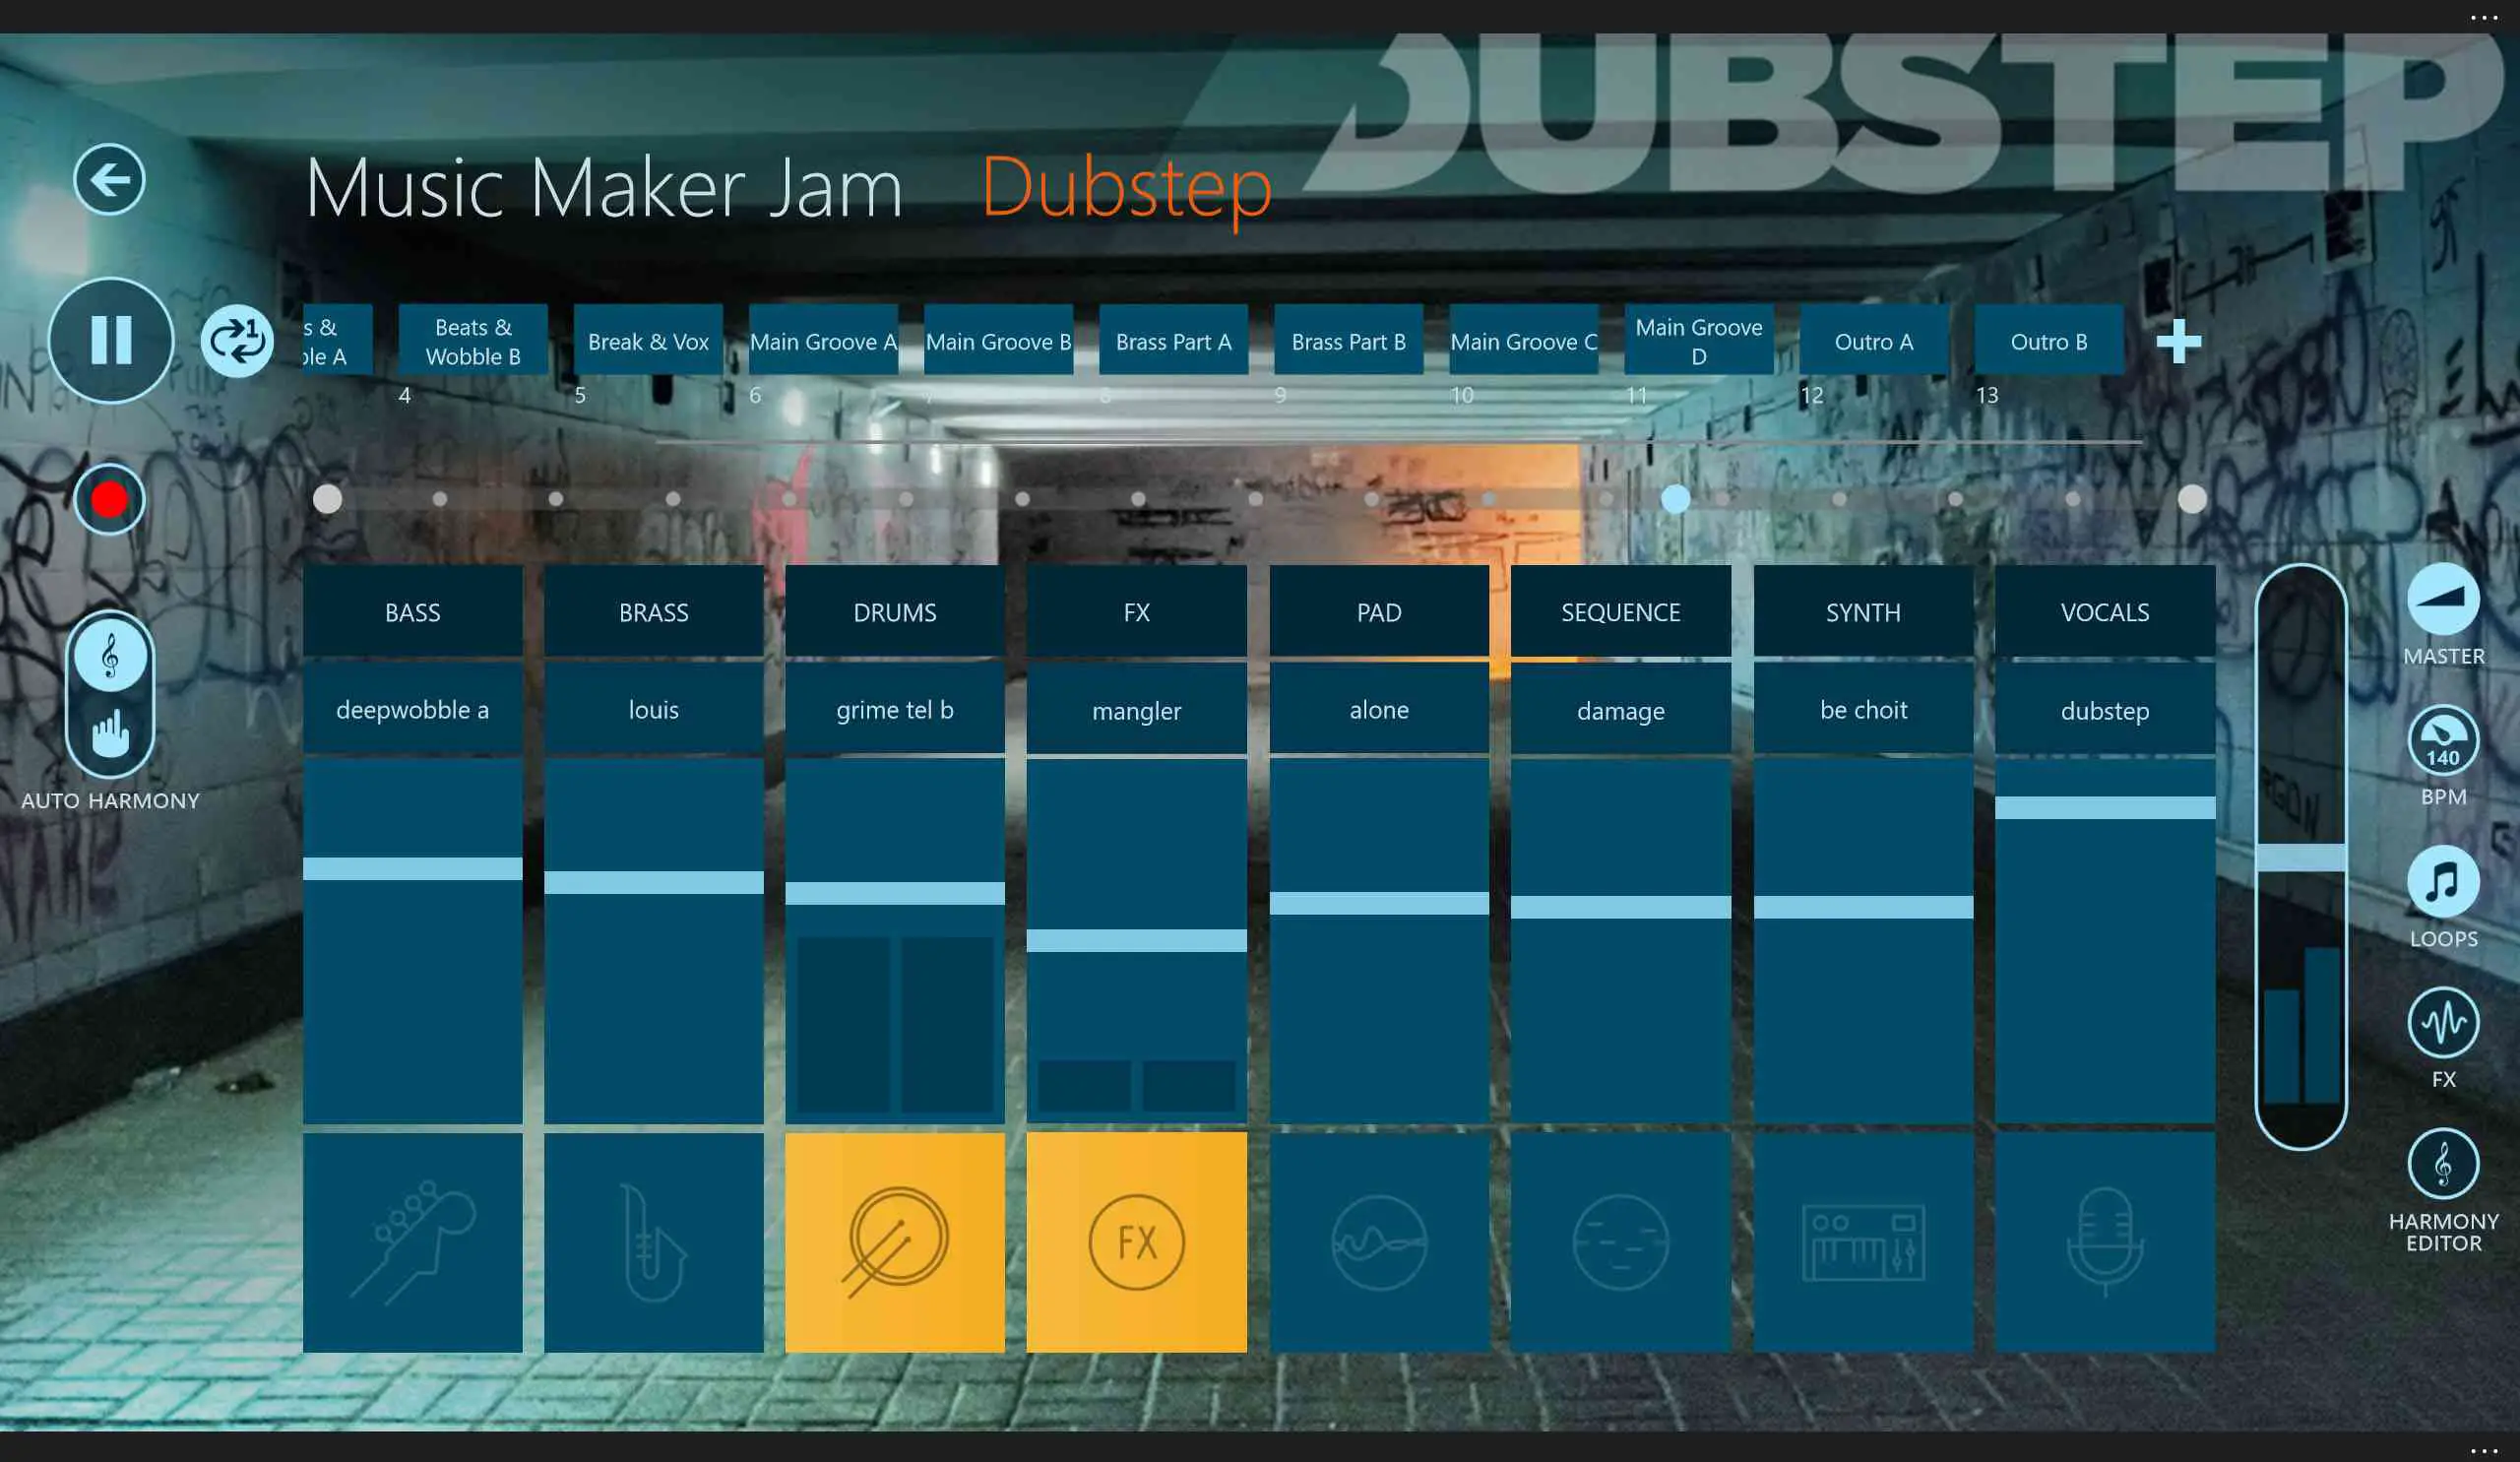 Aplicativo de música Music Maker Jam